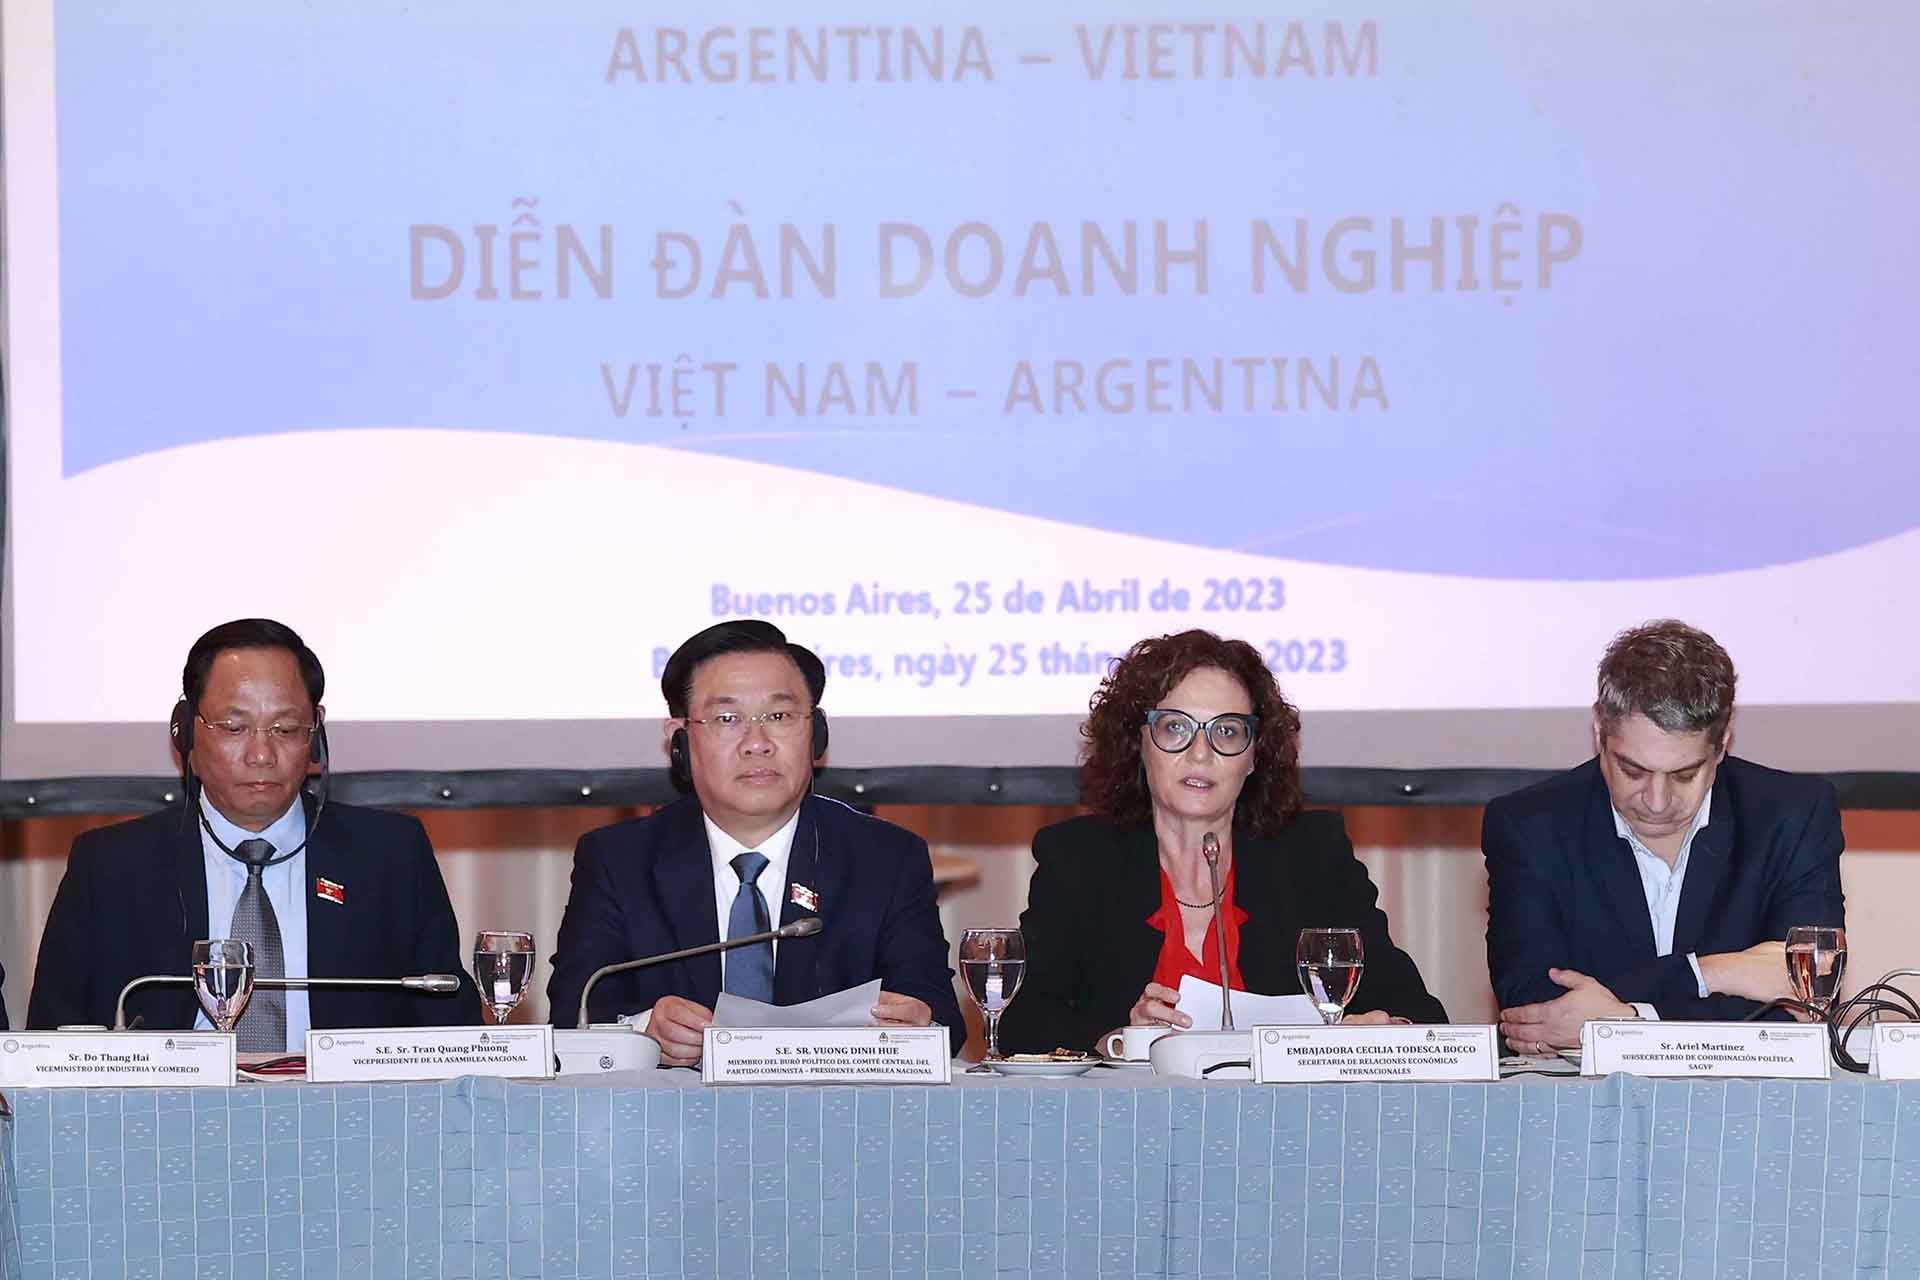 Diễn đàn doanh nghiệp Việt Nam-Argentina